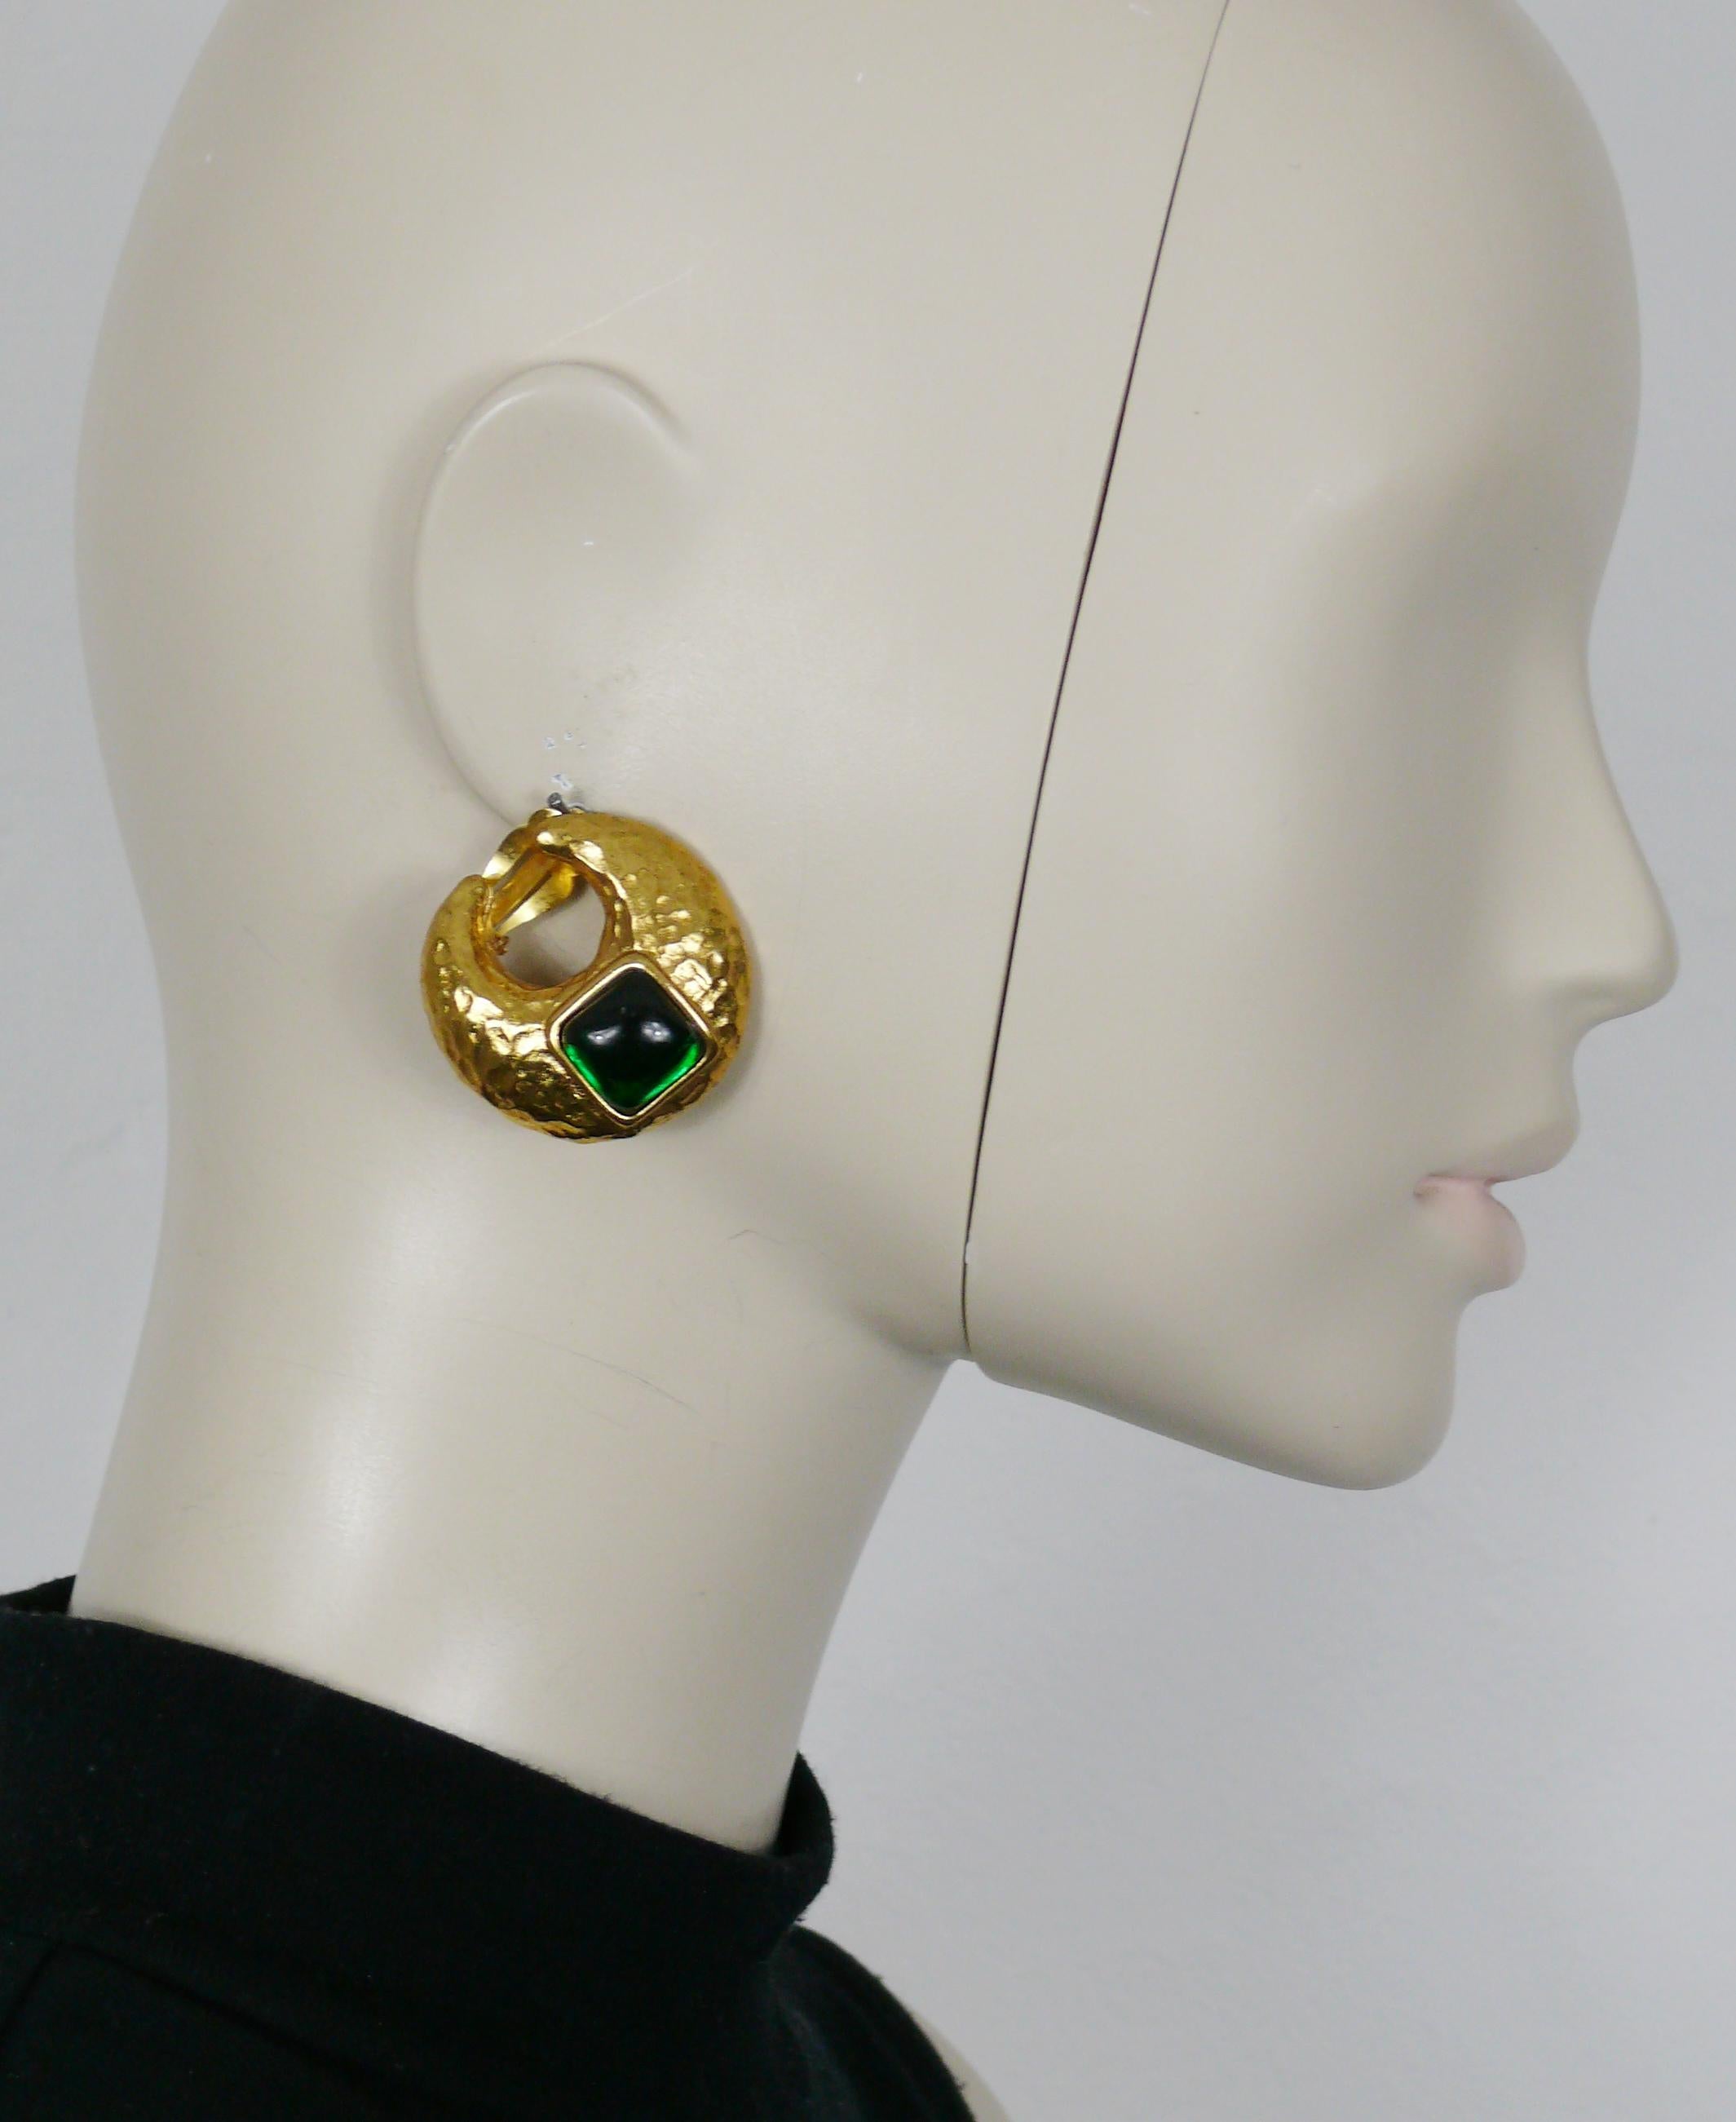 YVES SAINT LAURENT Vintage-Ohrringe in gehämmertem Goldton, halbmondförmig, mit einem grünen Harz-Cabochon verziert.

Geprägtes YSL Made in France.

Ungefähre Maße: Höhe ca. 3,5 cm (1,38 Zoll) / max. Breite ca. 3,5 cm (1,38 Zoll).

Gewicht pro